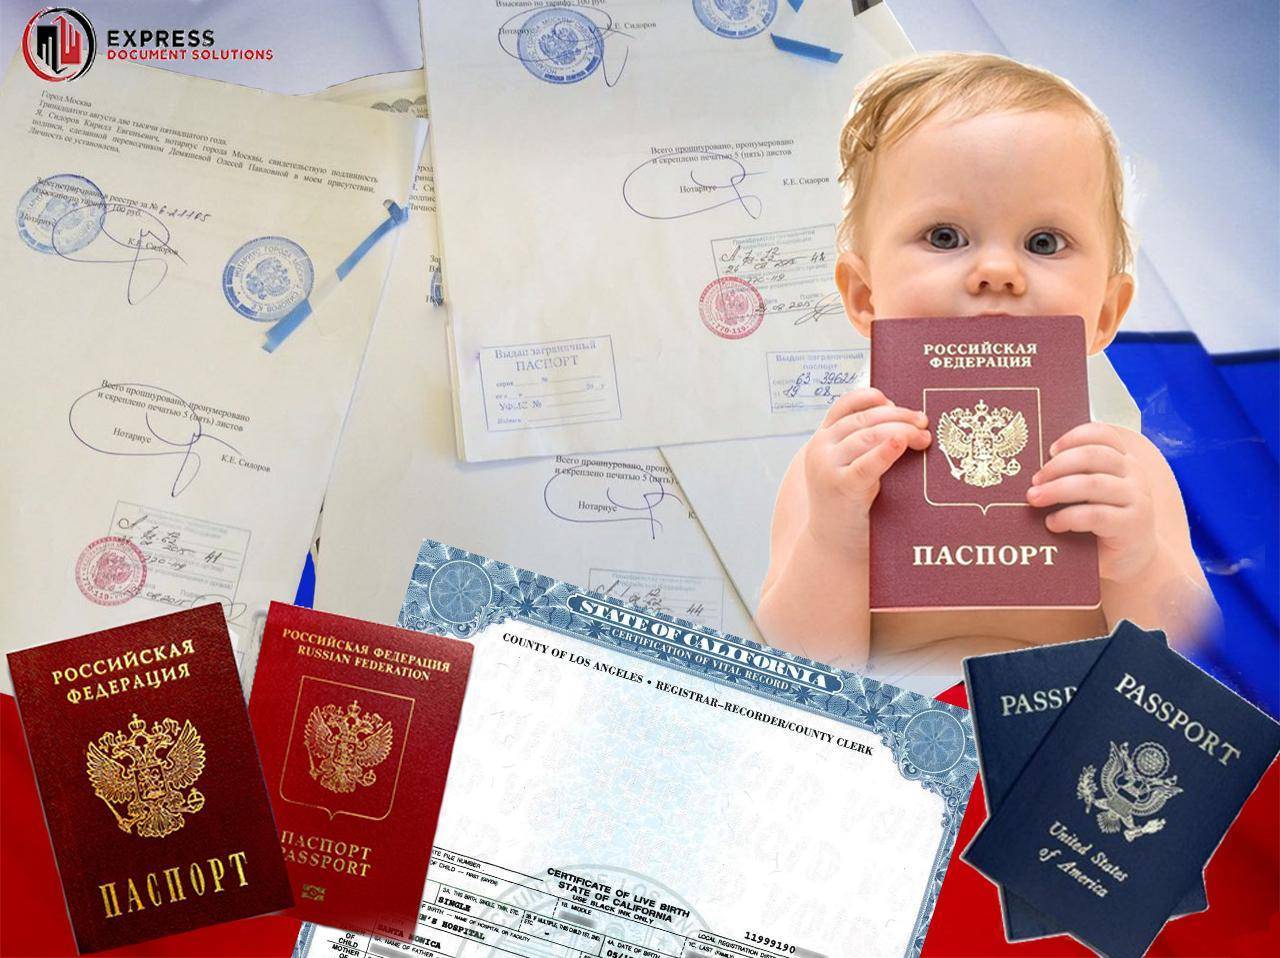 Документ, подтверждающий гражданство рф для ребенка до 14 лет